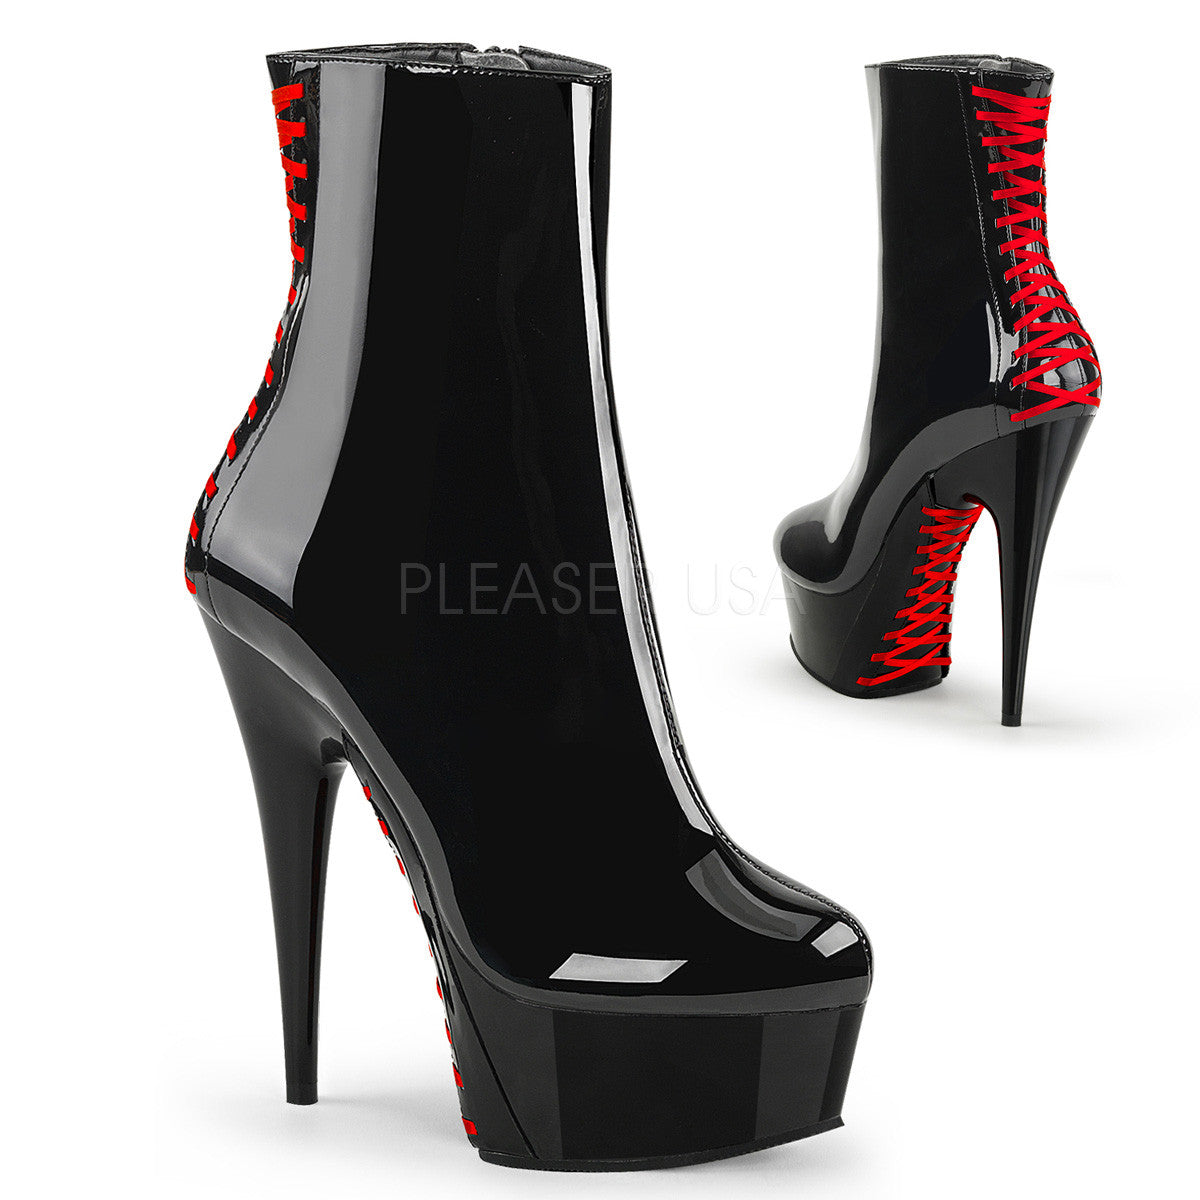 6" Heel DELIGHT-1010 Black Red Exotic Dancing Shoes